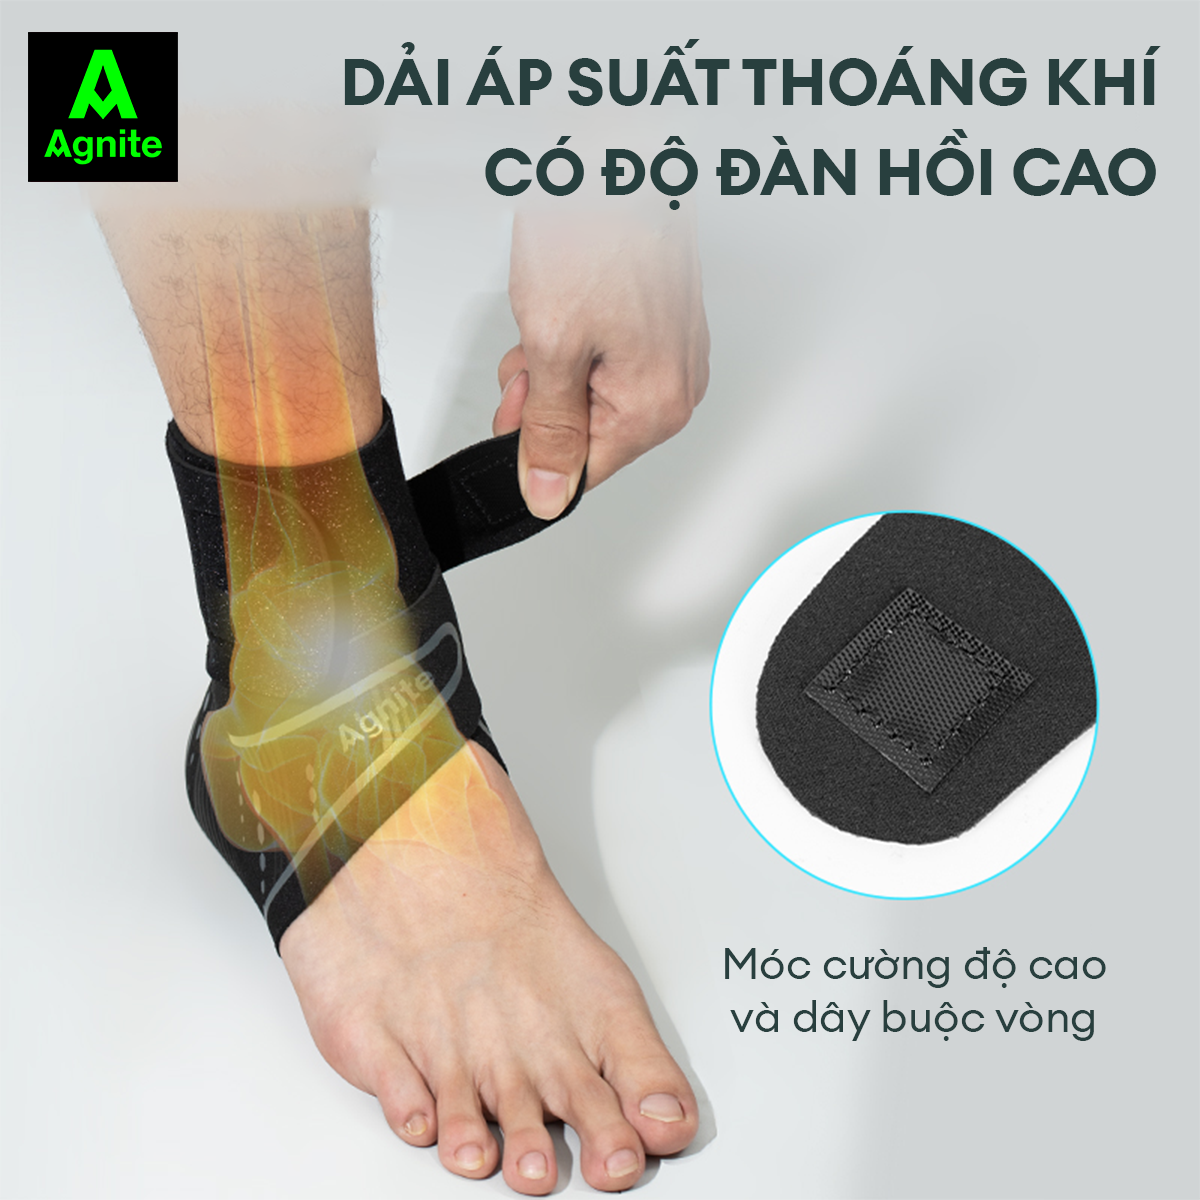 [1 đôi] Đai cổ chân, băng quấn bảo vệ mắt cá chân Agnite chính hãng, cao cấp, thích hợp sử dụng nhiều môn thể thao